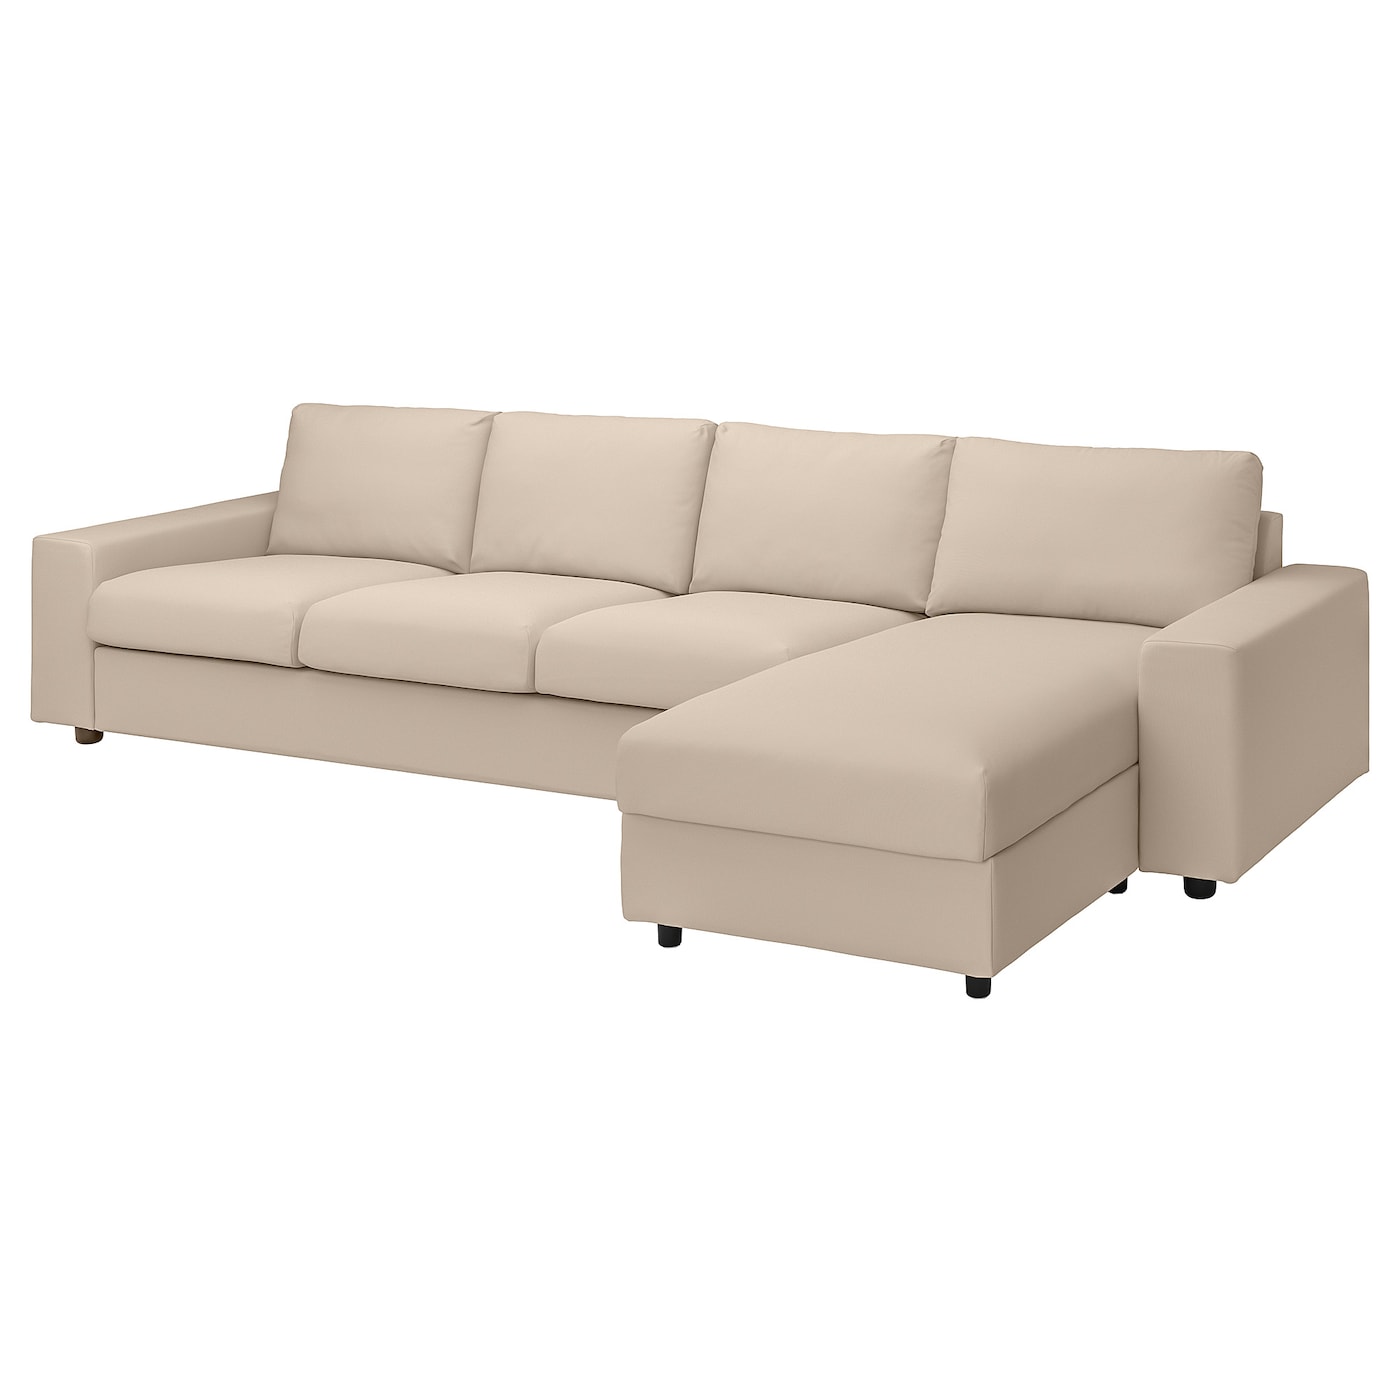 ВИМЛЕ 4-местный диван + диван, с широкими подлокотниками/Халларп бежевый VIMLE IKEA